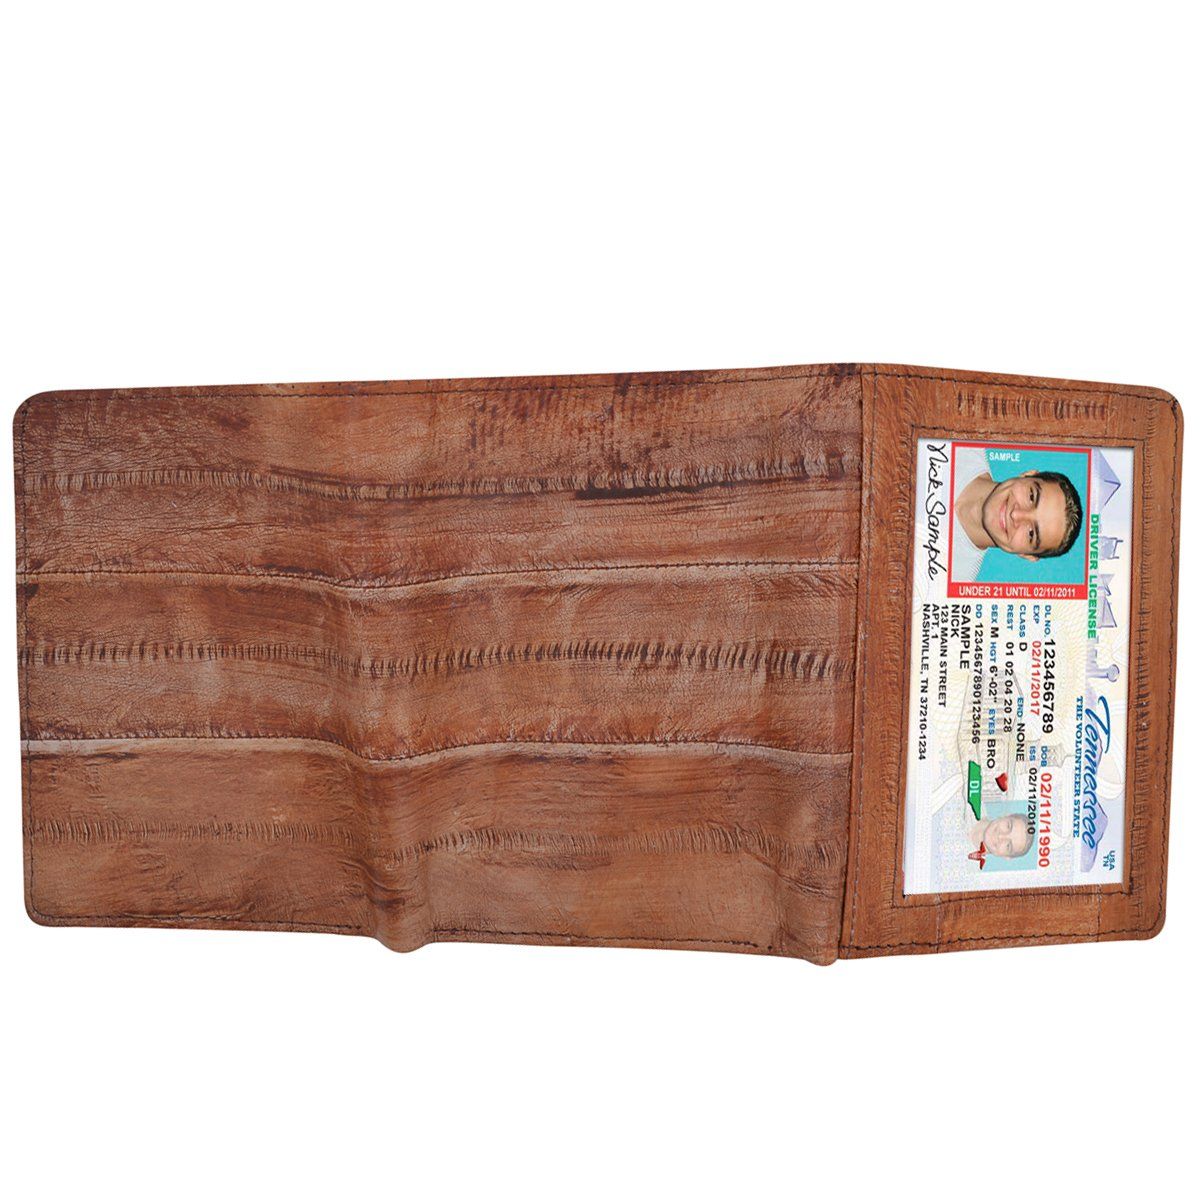 Waterproof Eel Skin Trifold Leather Wallet